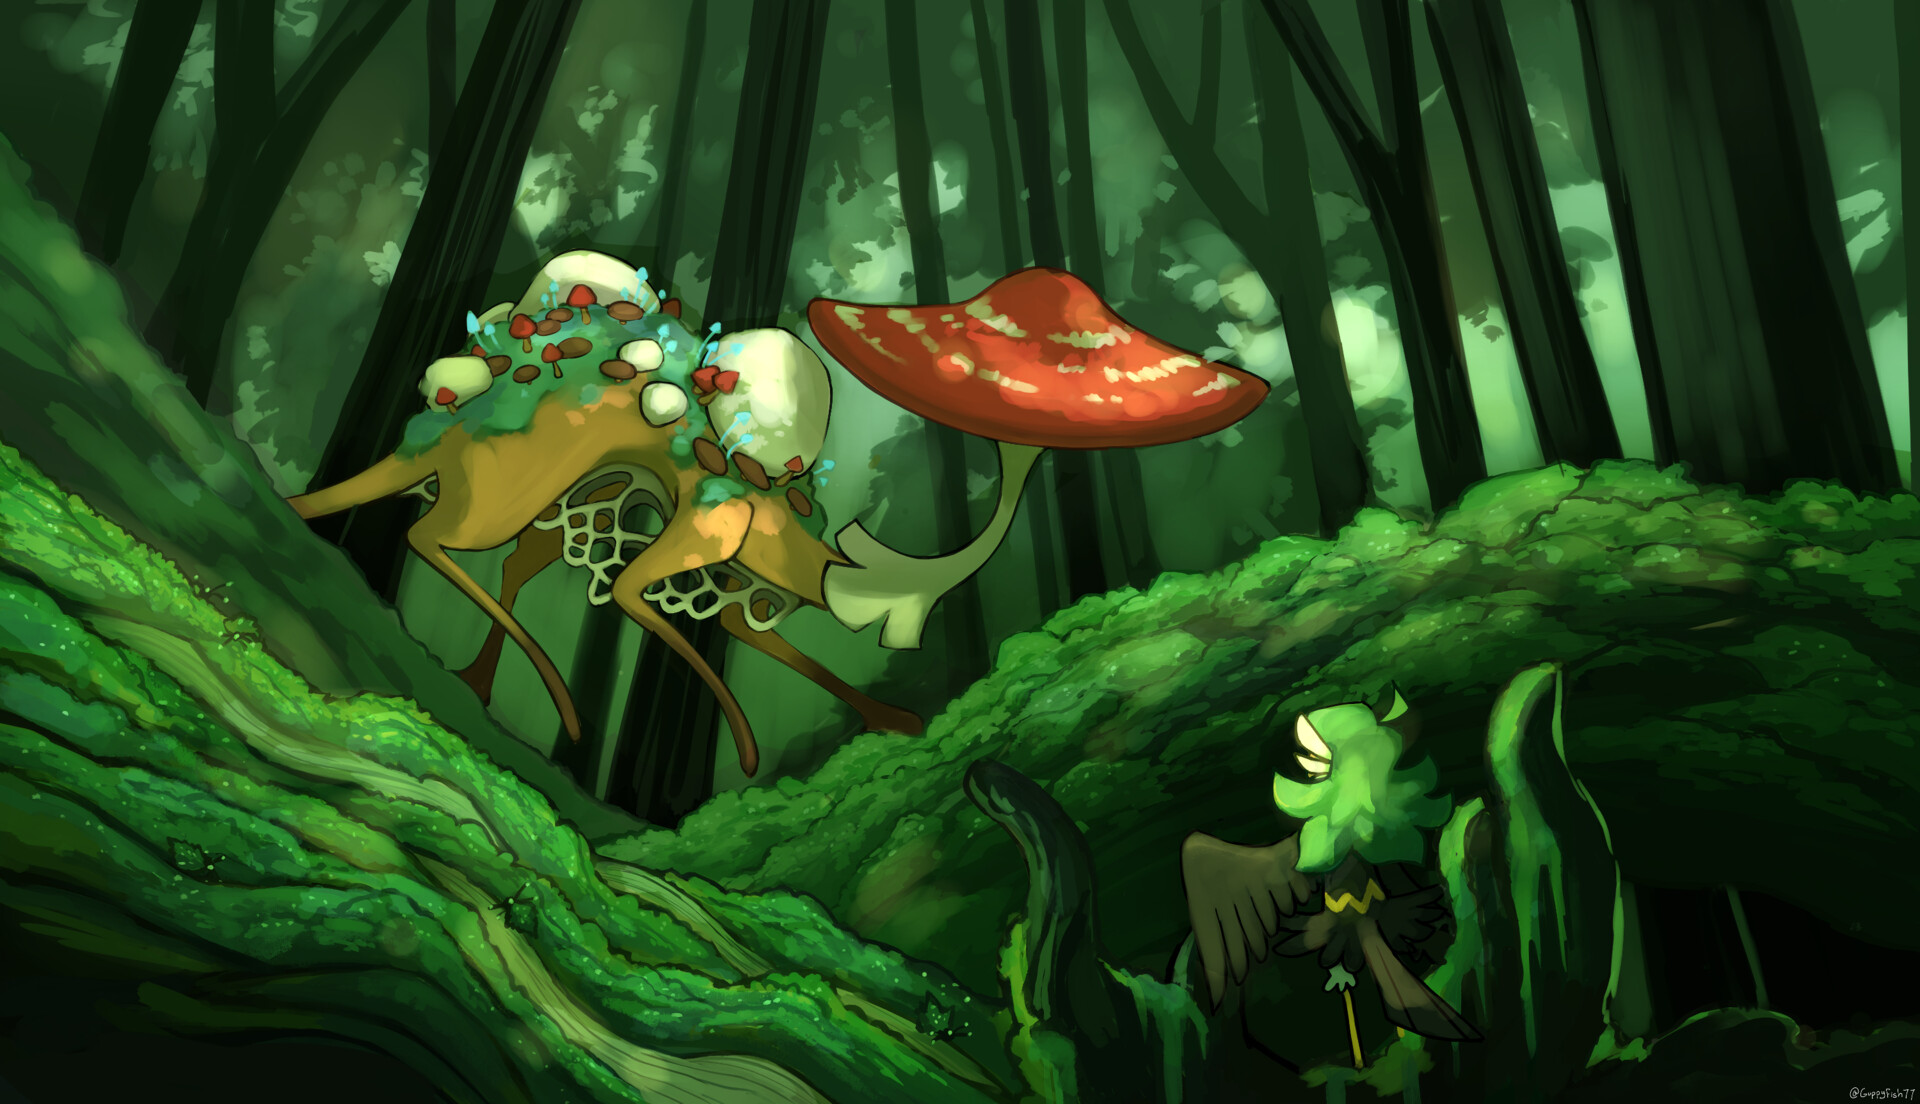 ArtStation - Spirit of Mushrooms